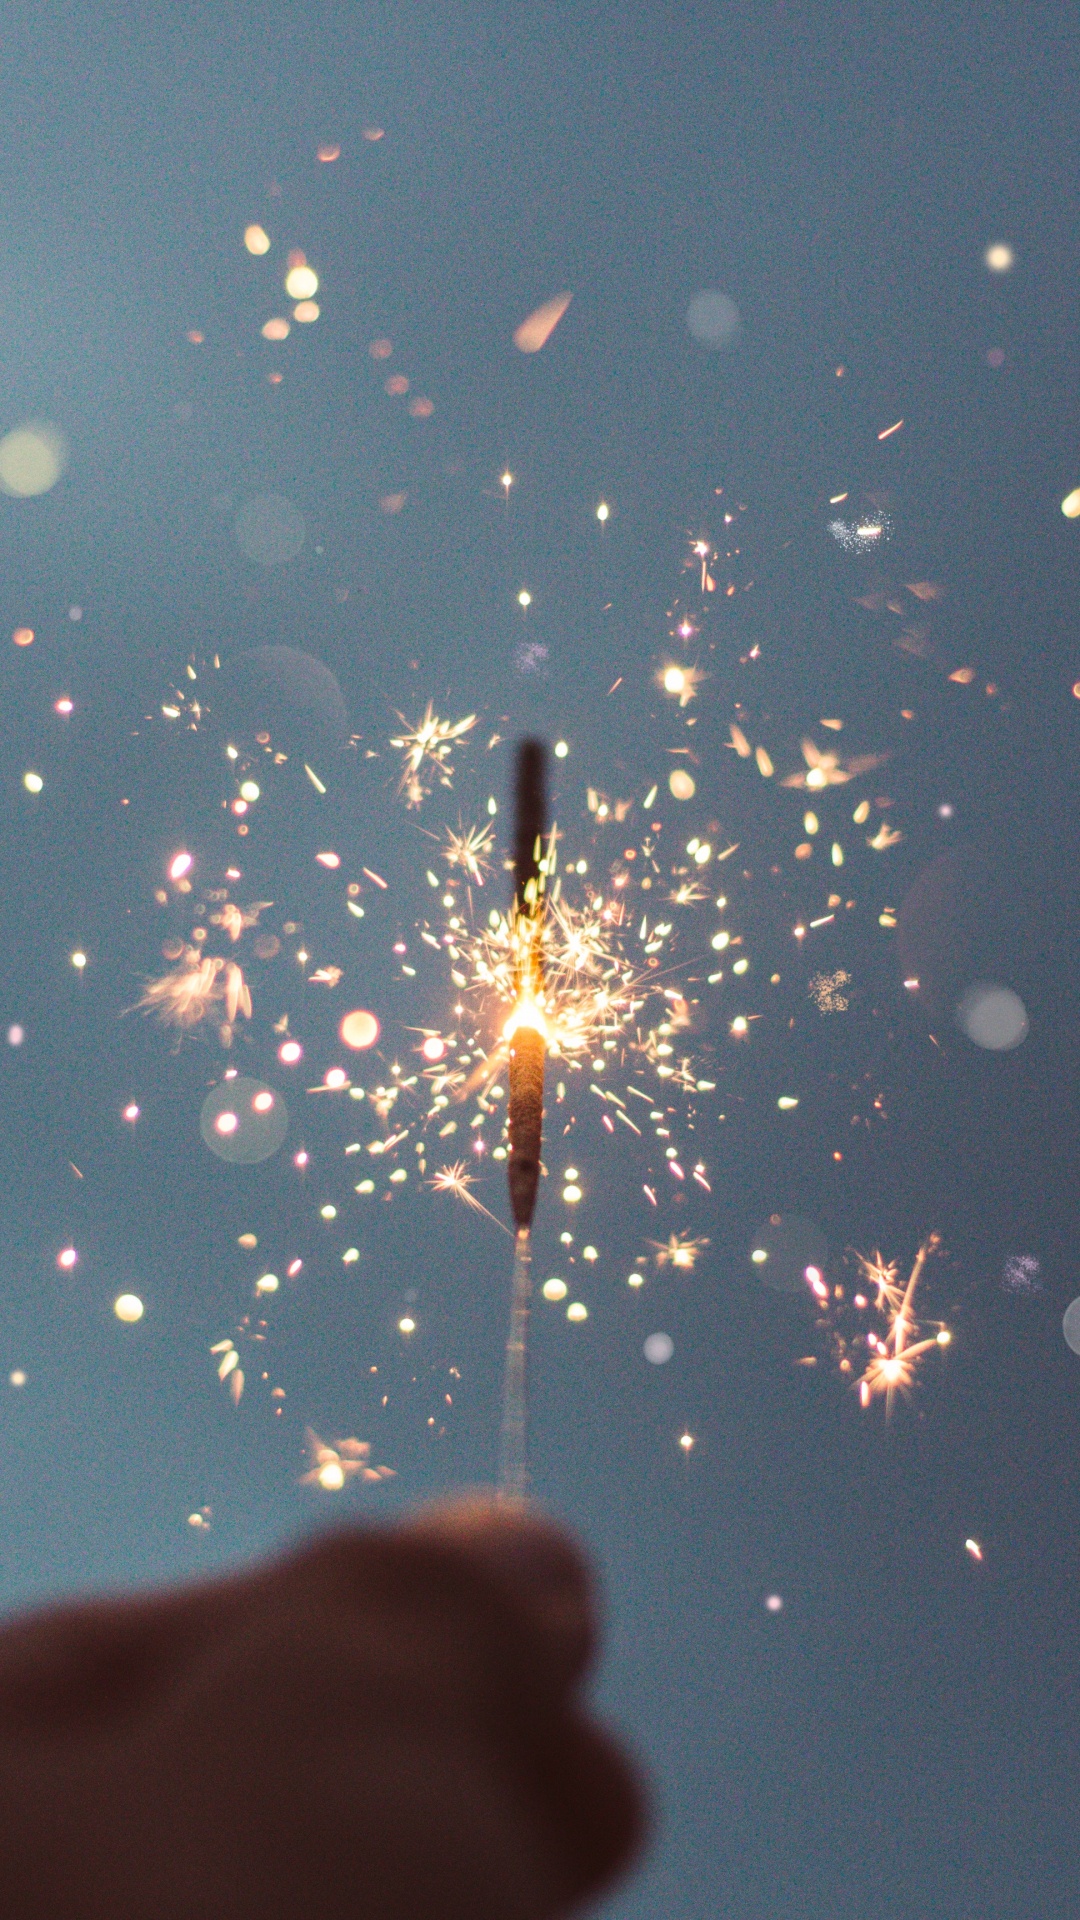 Neujahr, Wasser, Wunderkerze, Feuerwerk, Hand. Wallpaper in 1080x1920 Resolution